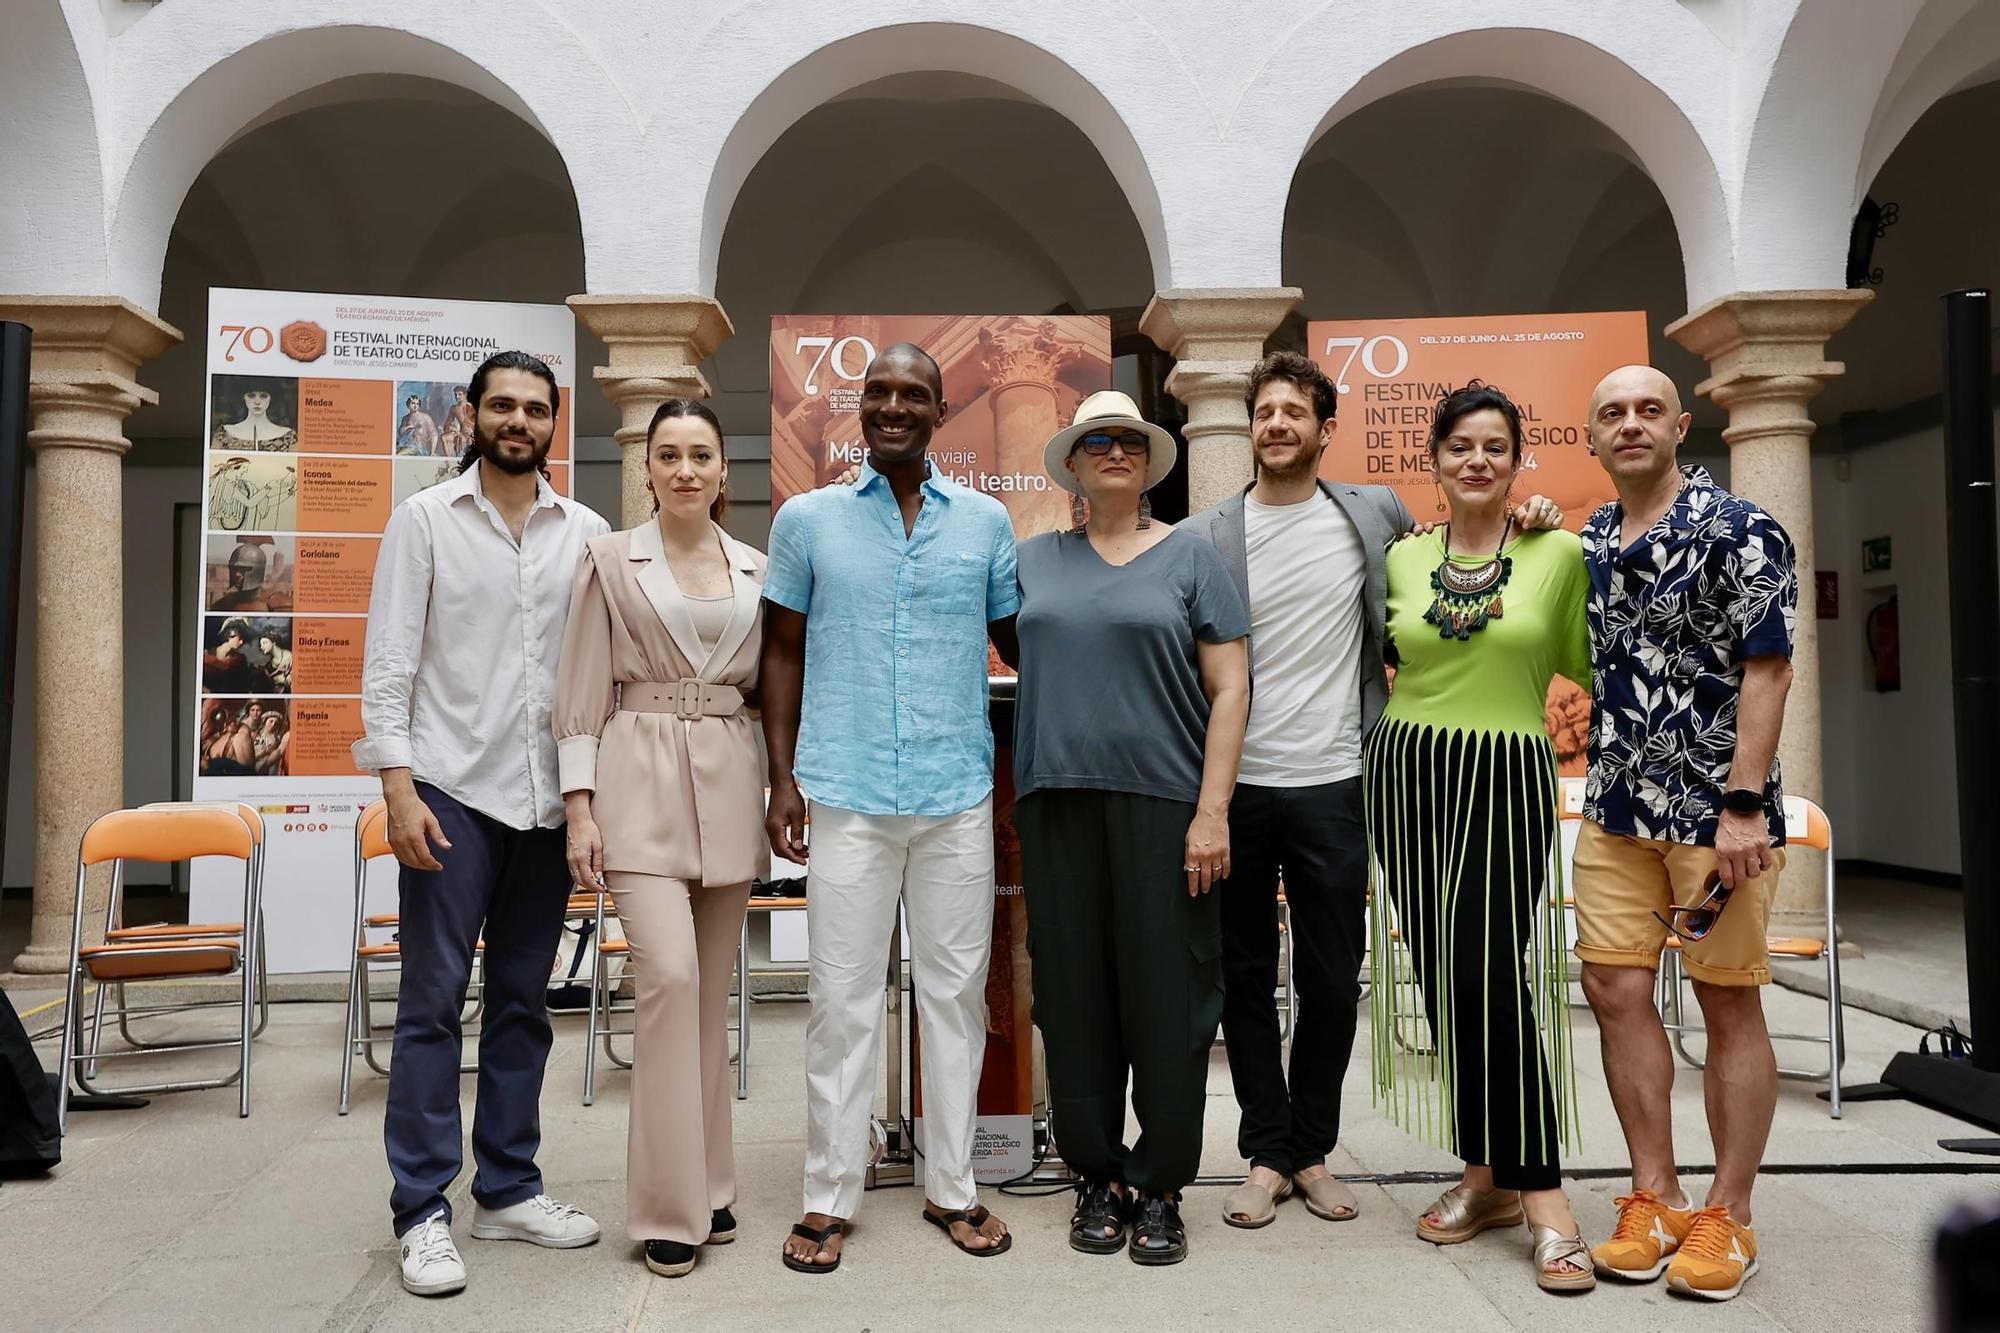 Presentación de la obra Medea, que abre el Festival Internacional de Teatro Clásico de Mérida